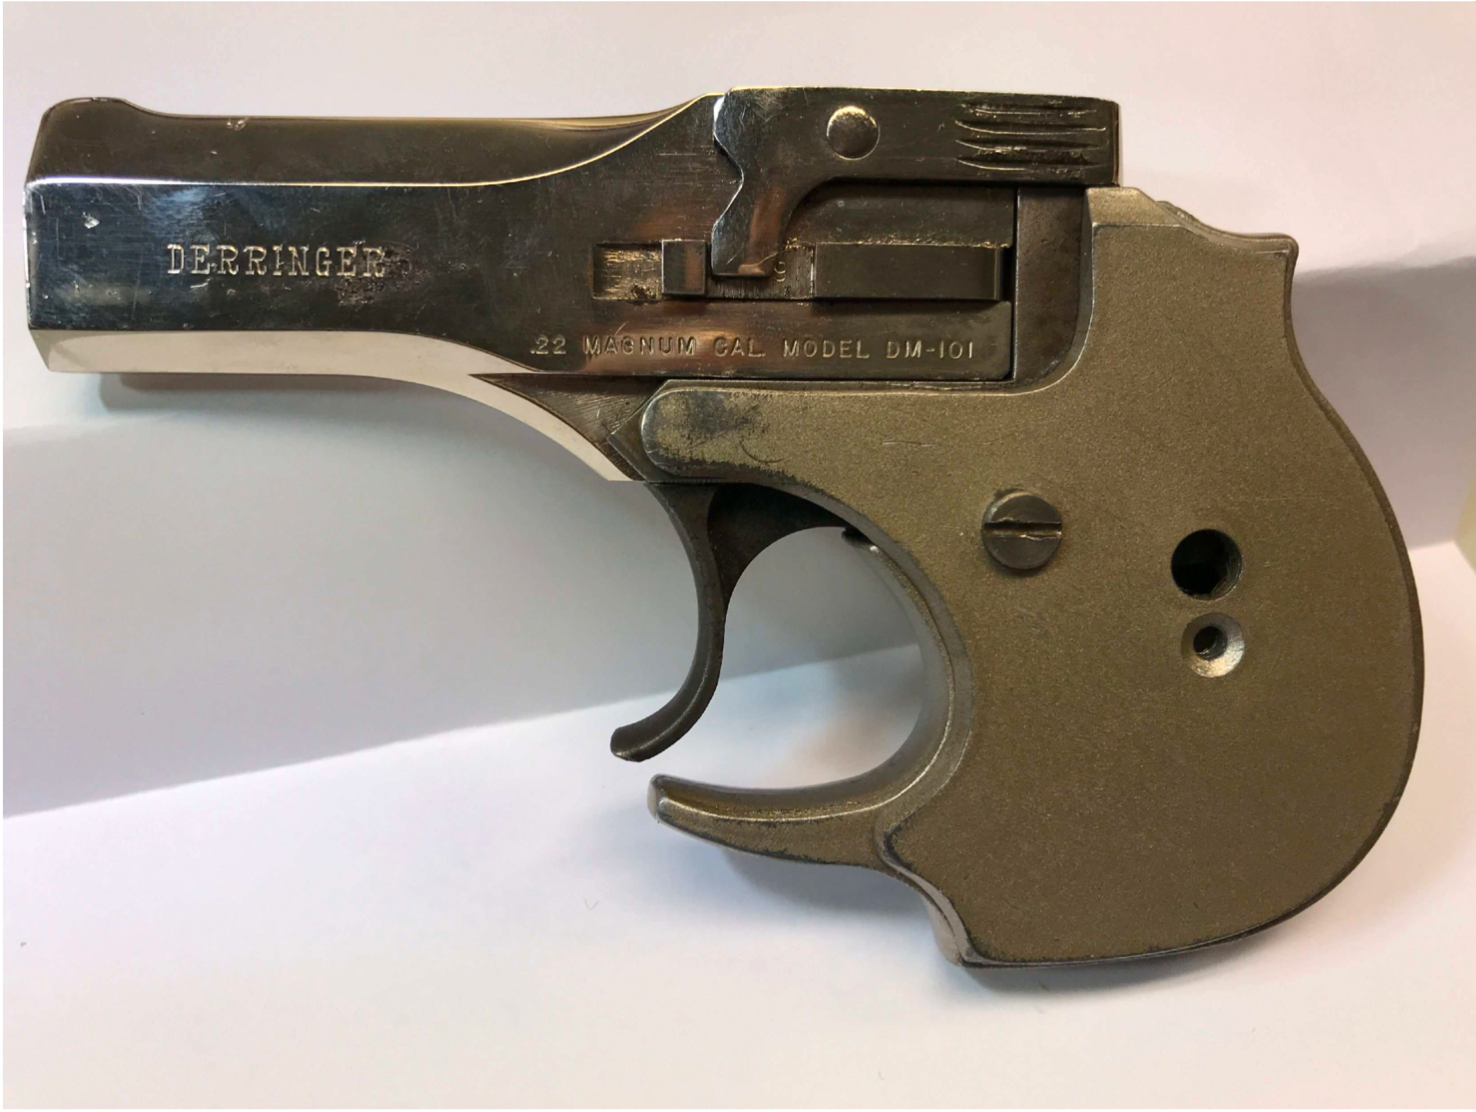 “Den mindre storleken på pistolen gör den till ett utmärkt vapen för dolt bärande”, skrev polisen.